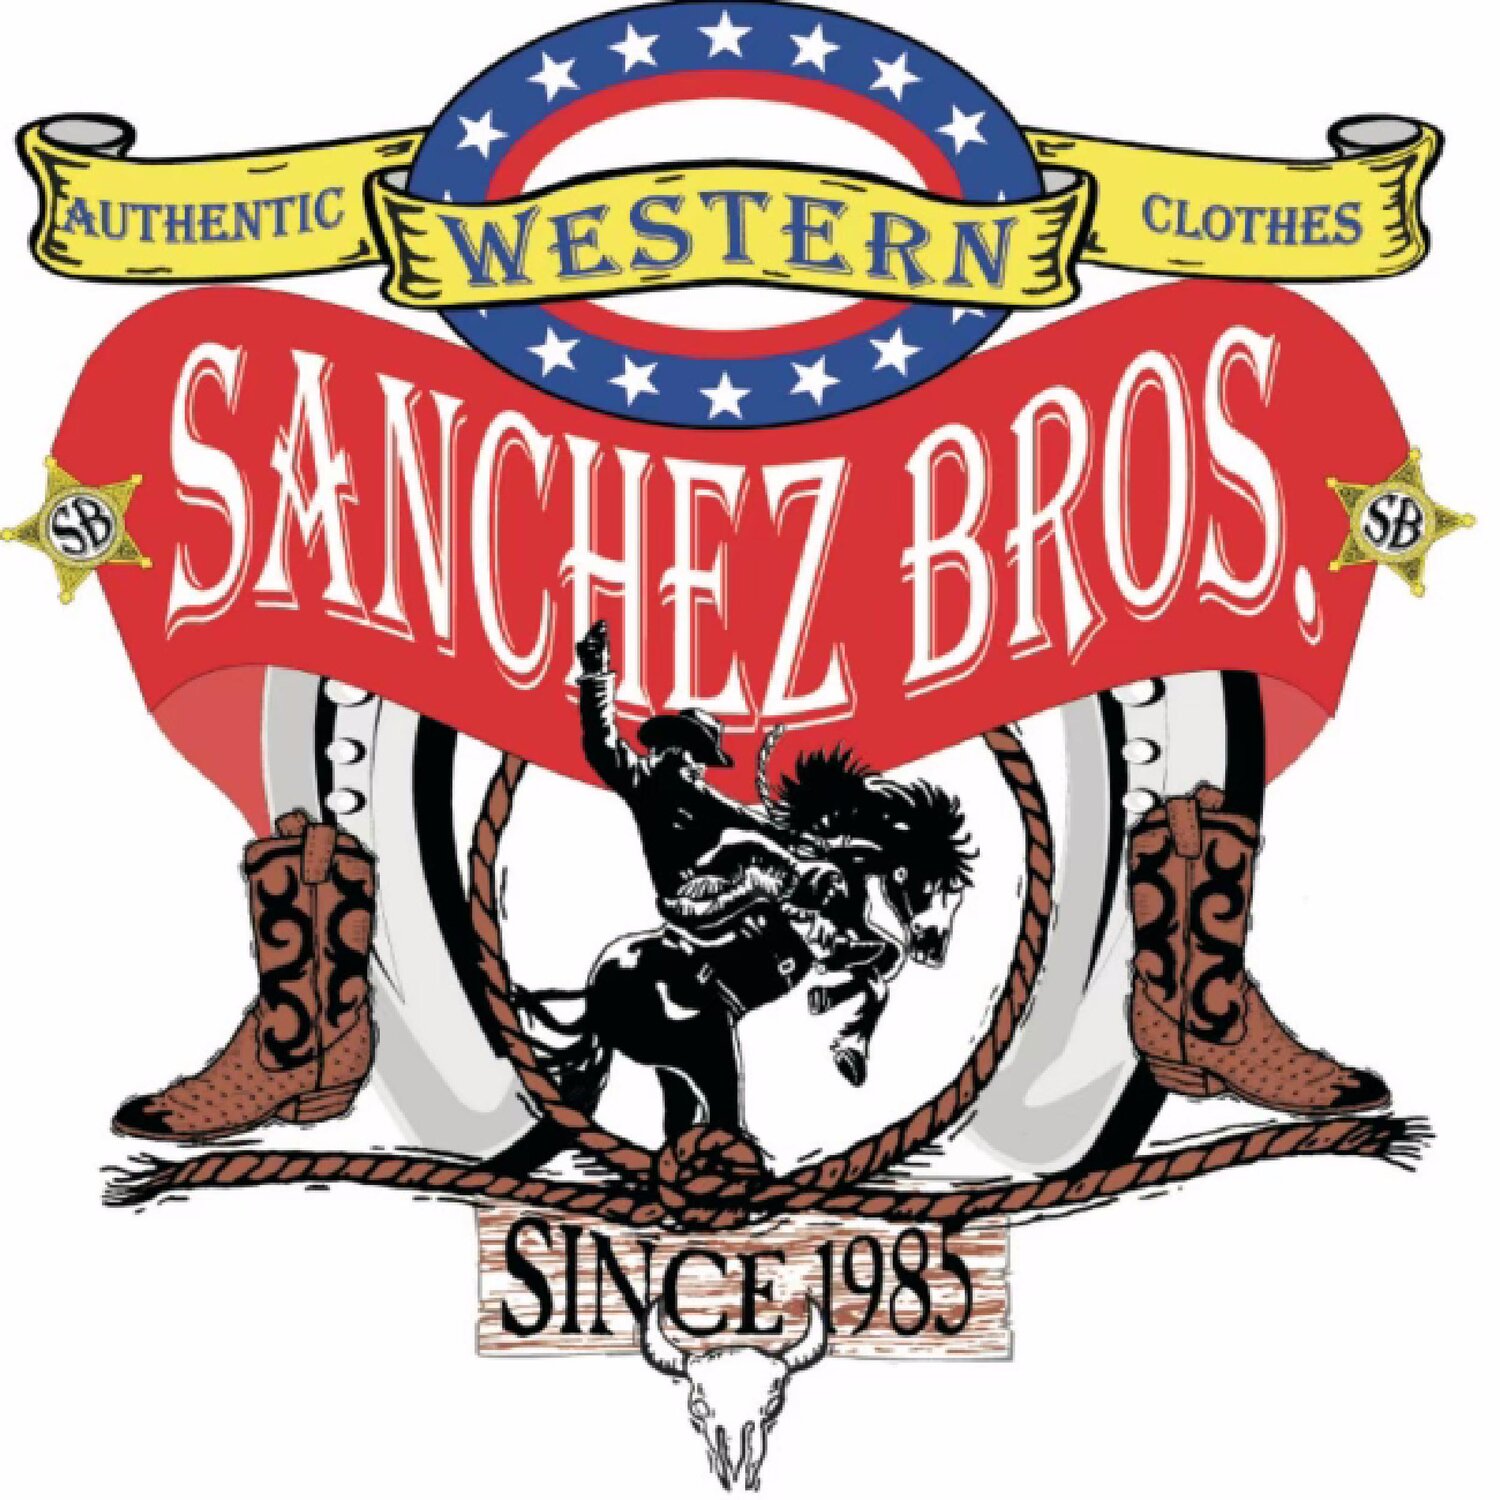 Sanchez Bros